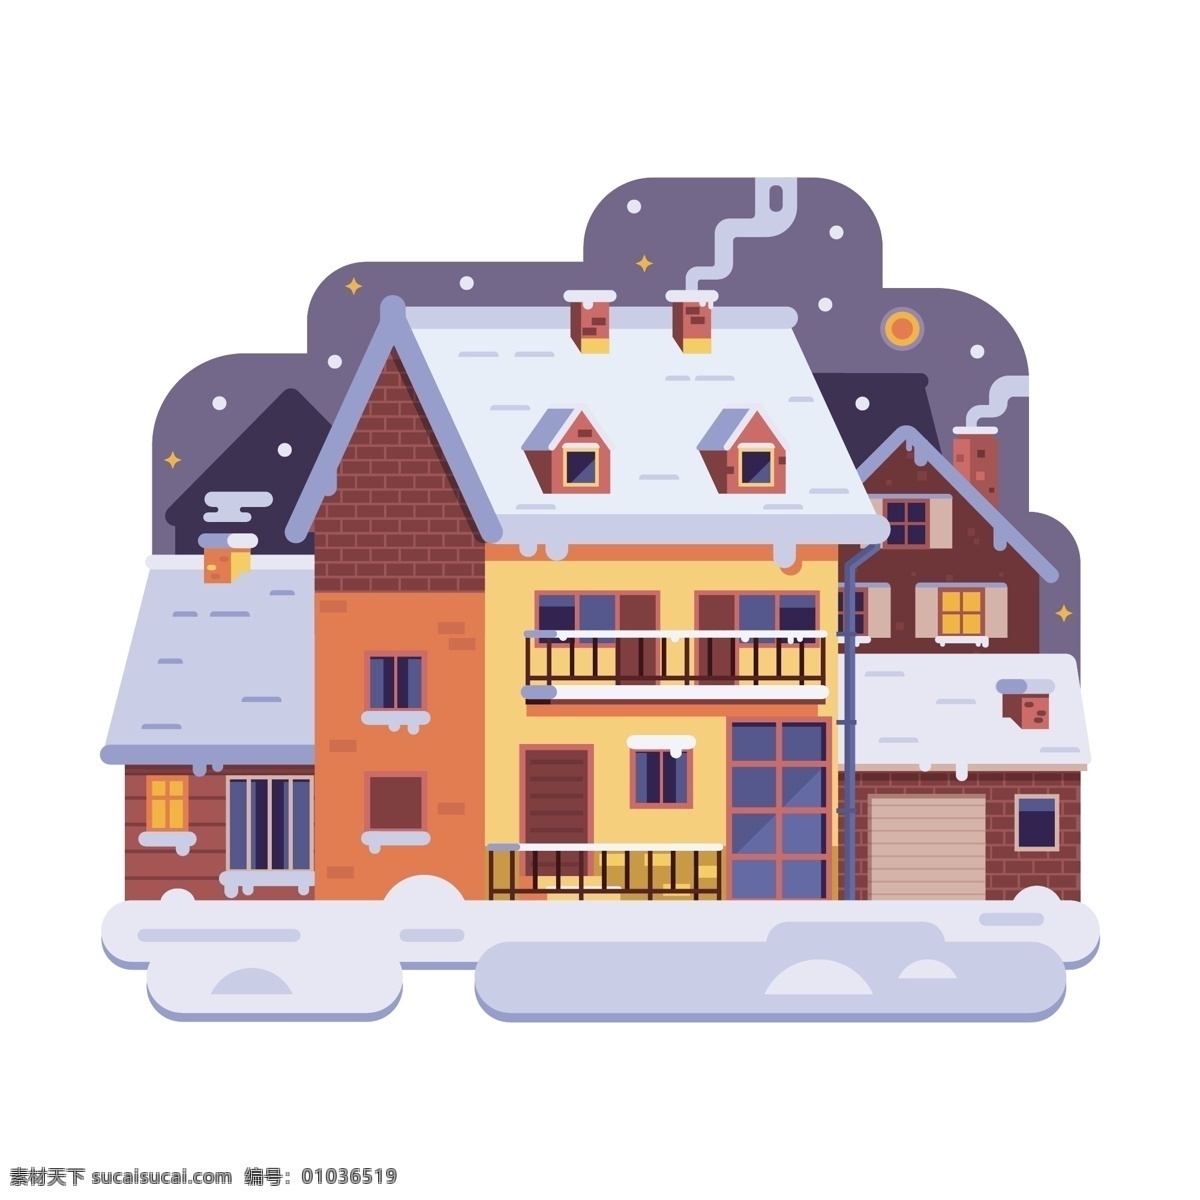 冬季 房子 免费素材 简约卡通房子 卡通冬季素材 雪景 元素 冬天雪景 静物 卡通元素 卡通雪景 卡通冬天